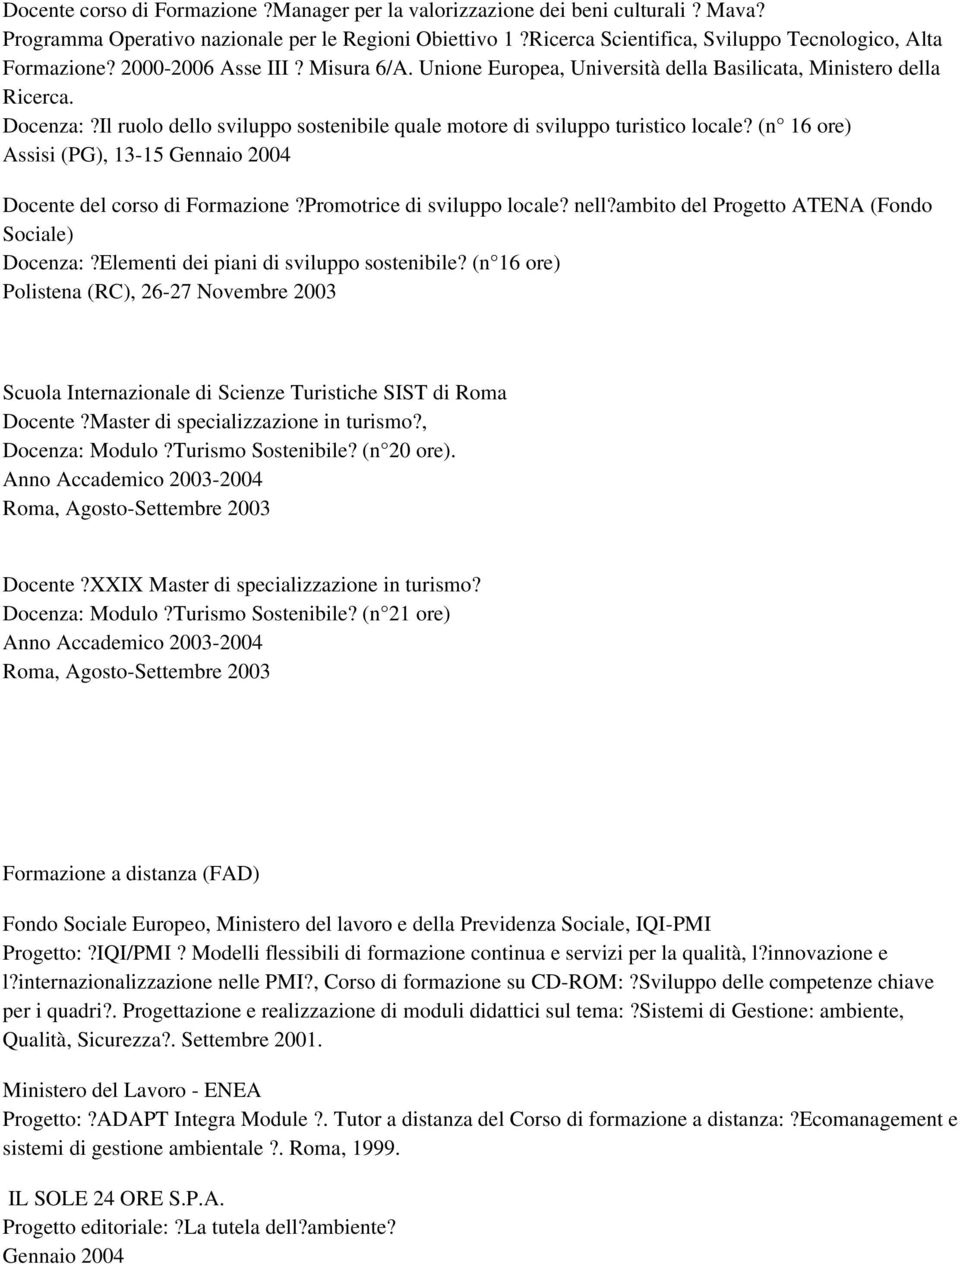 (n 16 ore) Assisi (PG), 13-15 Gennaio 2004 Docente del corso di Formazione?Promotrice di sviluppo locale? nell?ambito del Progetto ATENA (Fondo Sociale) Docenza:?